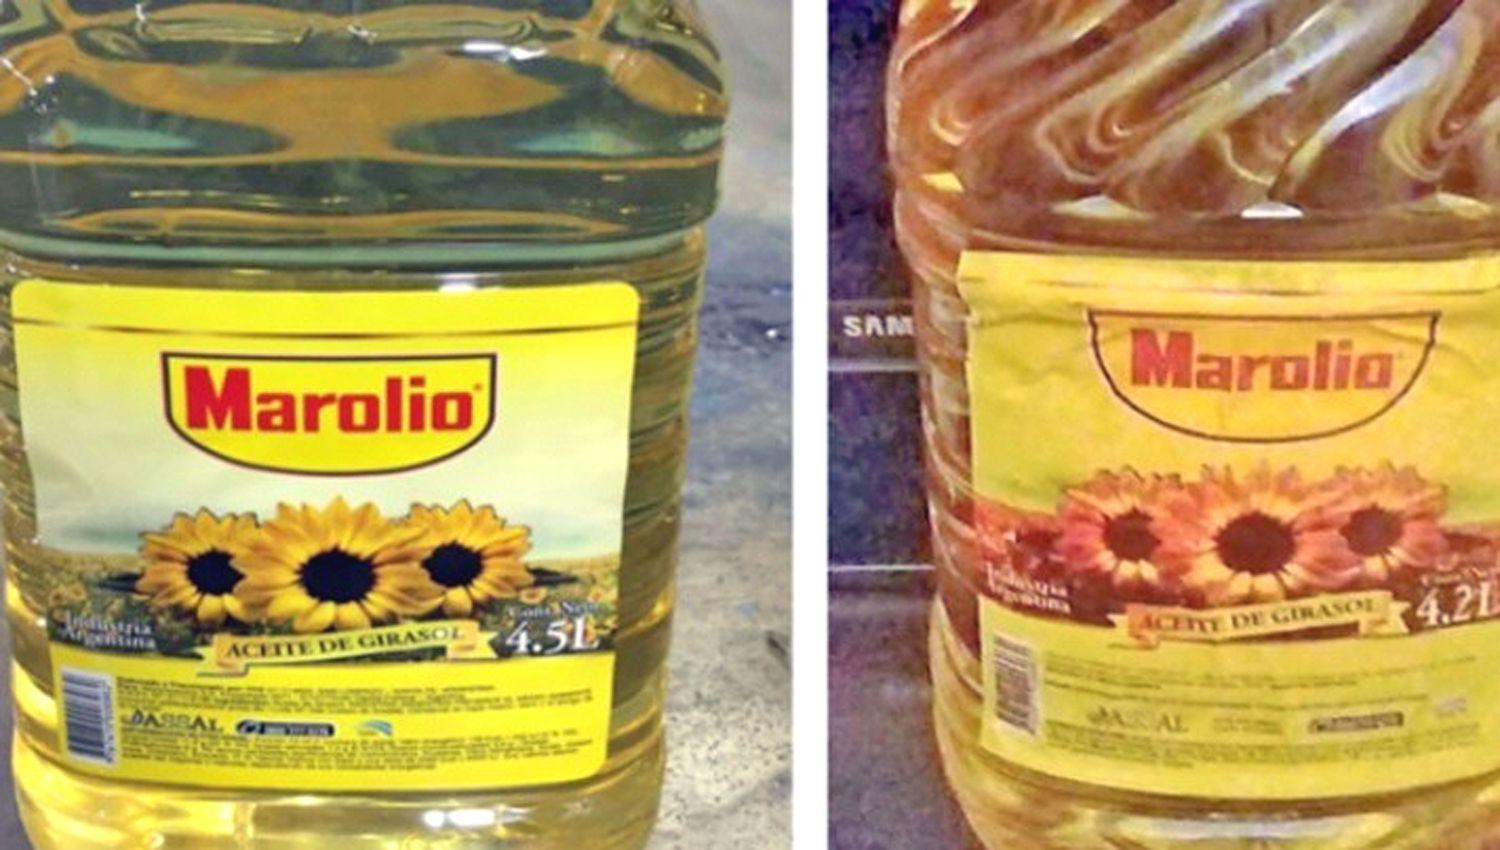 RIESGO Se advirtió que se vendía un aceite utilizando una conocida marca la que no elaboró ese producto
